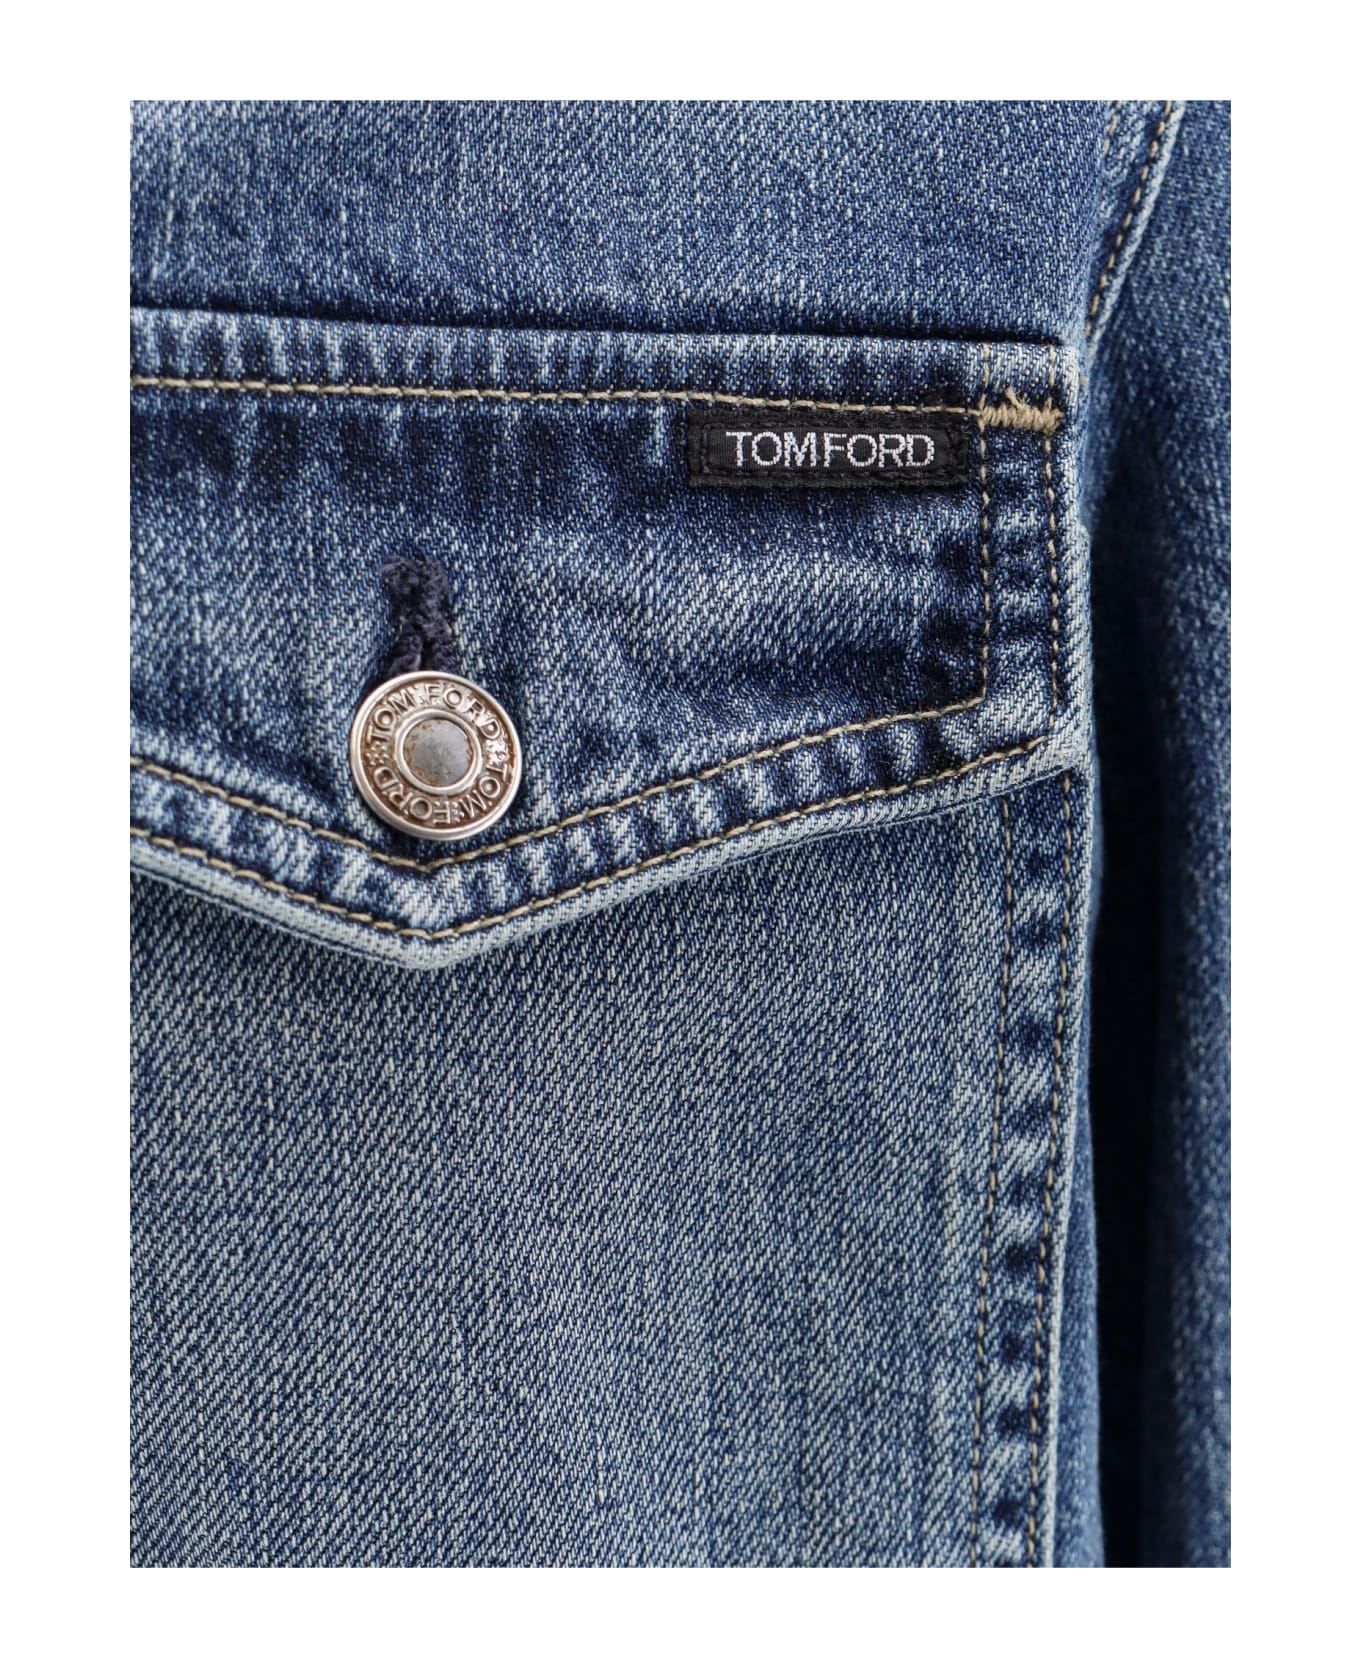 Tom Ford Jacket - VINTAGE PALE BLUE